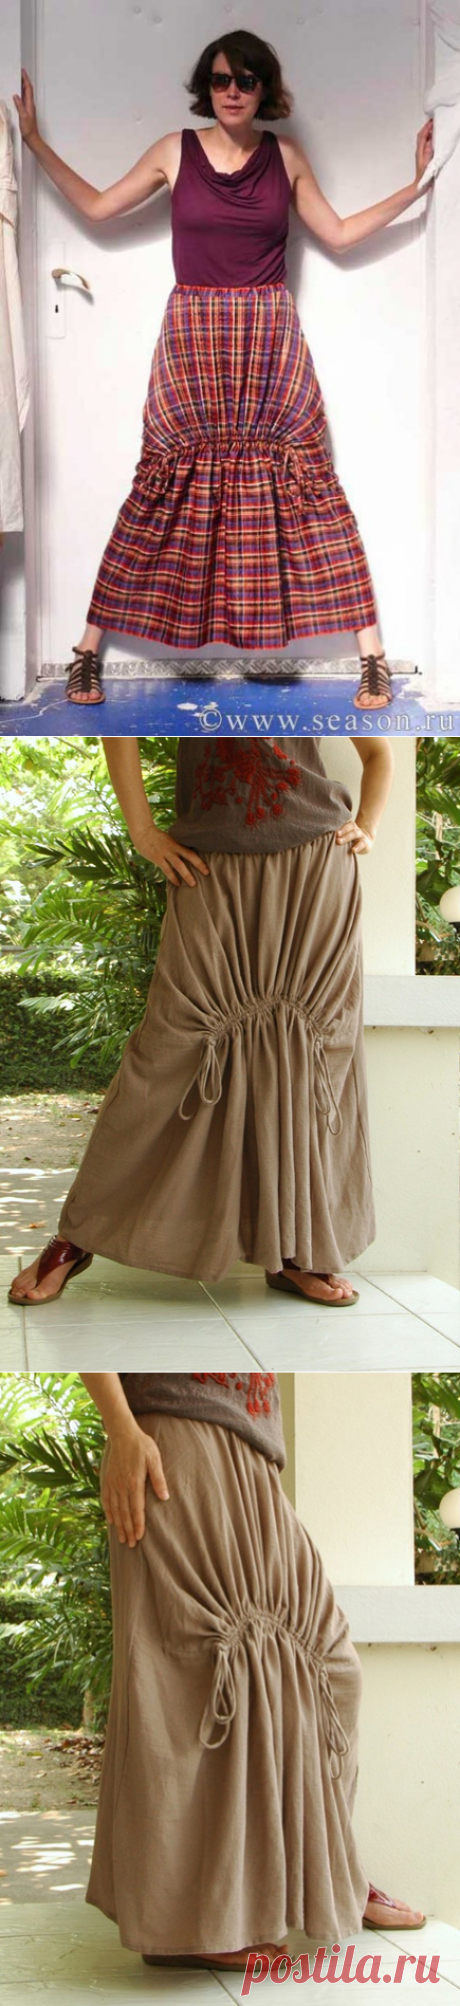 Тайская юбка